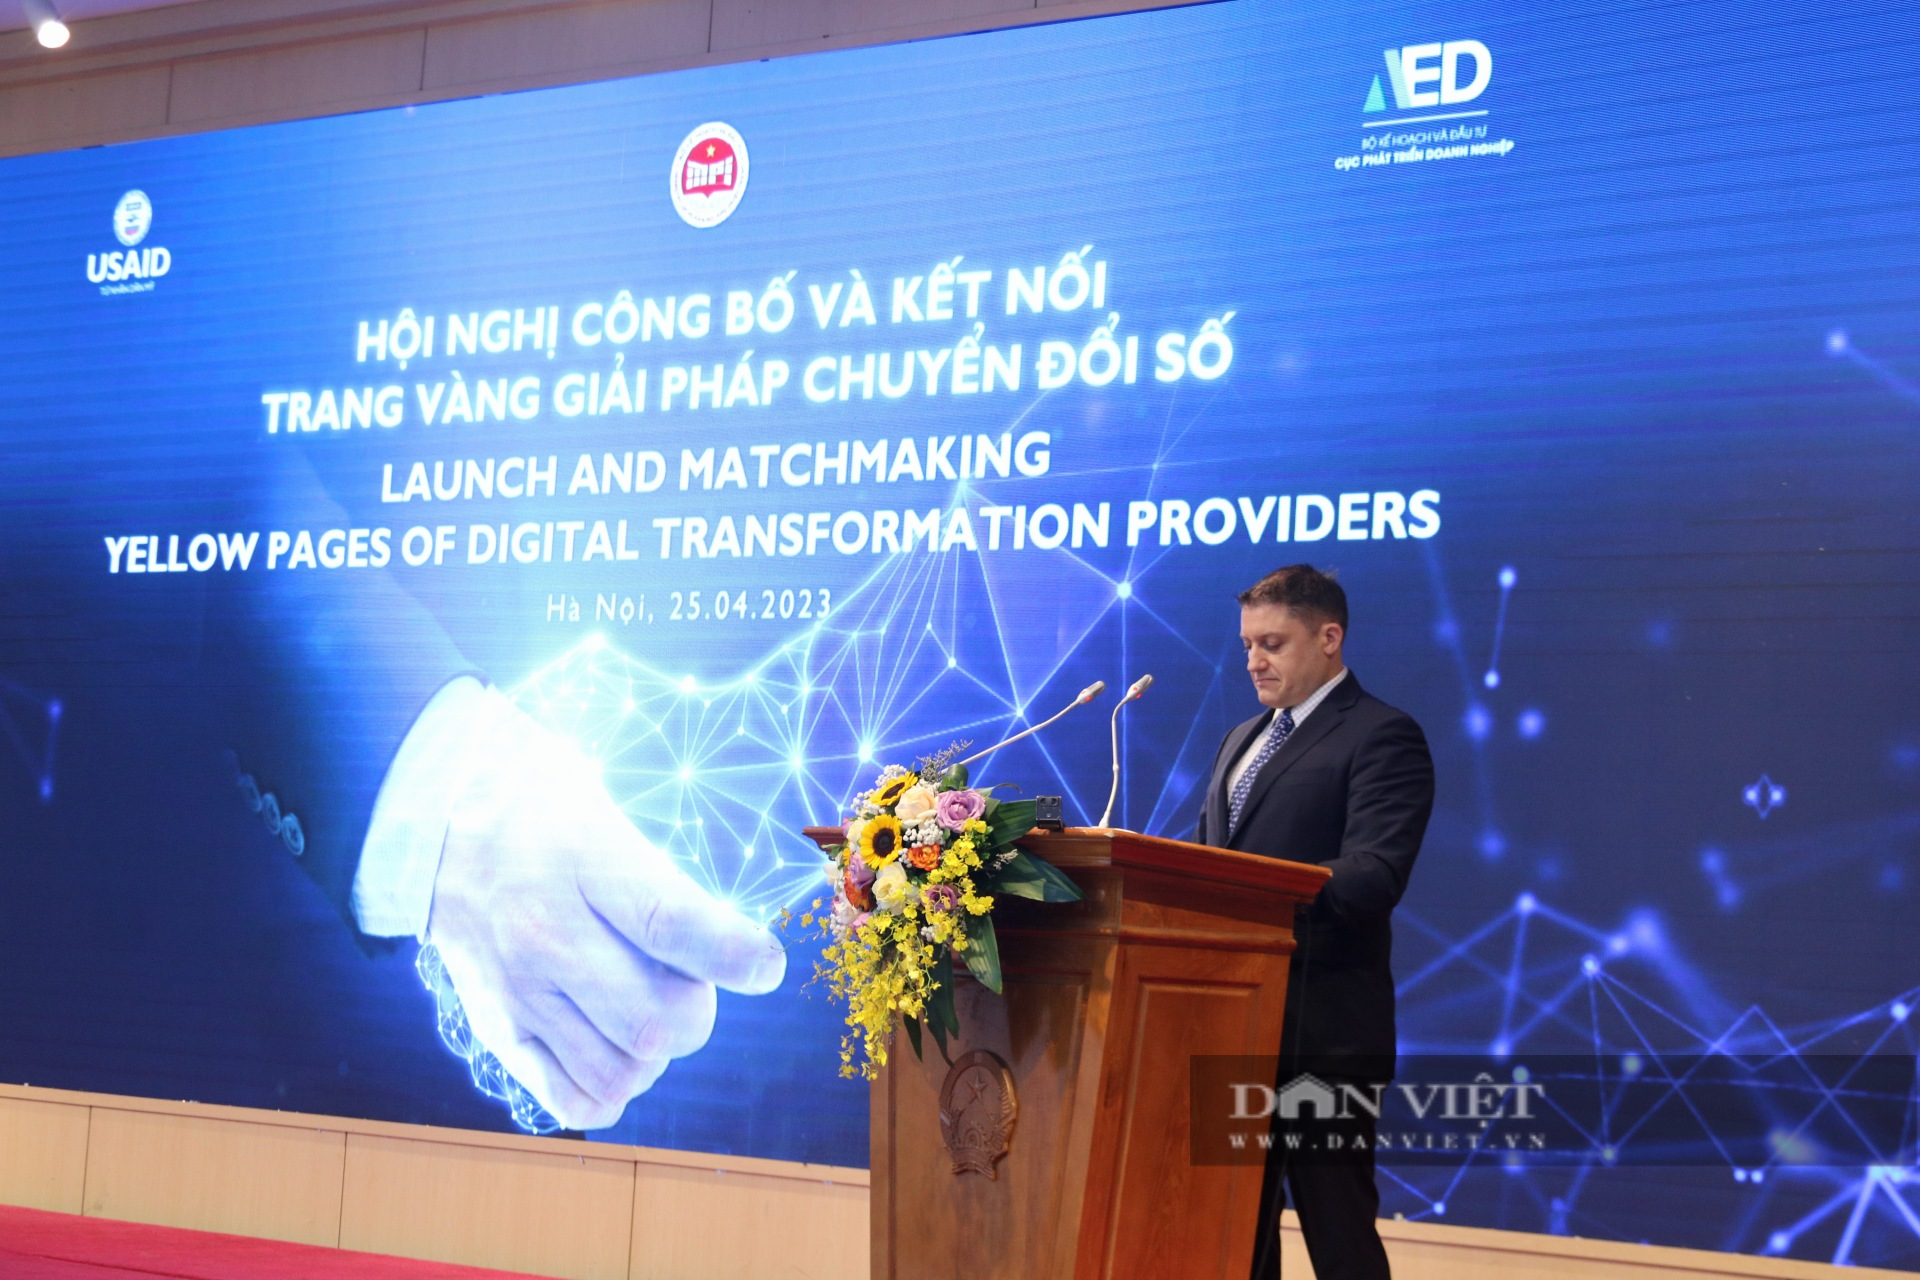 Lần đầu công bố Trang vàng giải pháp chuyển đổi số cho doanh nghiệp Việt Nam - Ảnh 2.